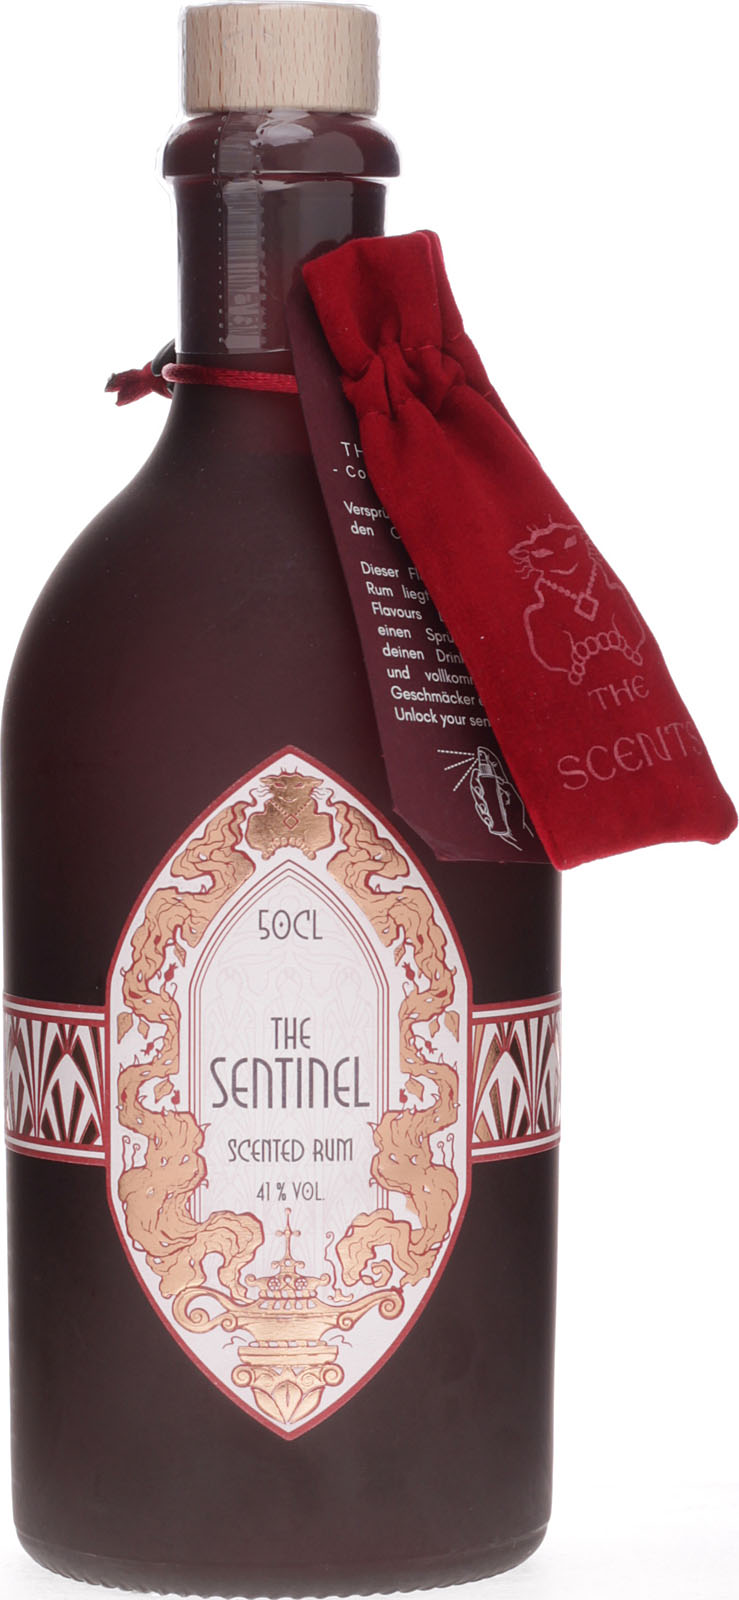 The Sentinel Scented Rum 0,5 Liter bei uns im Shop kauf